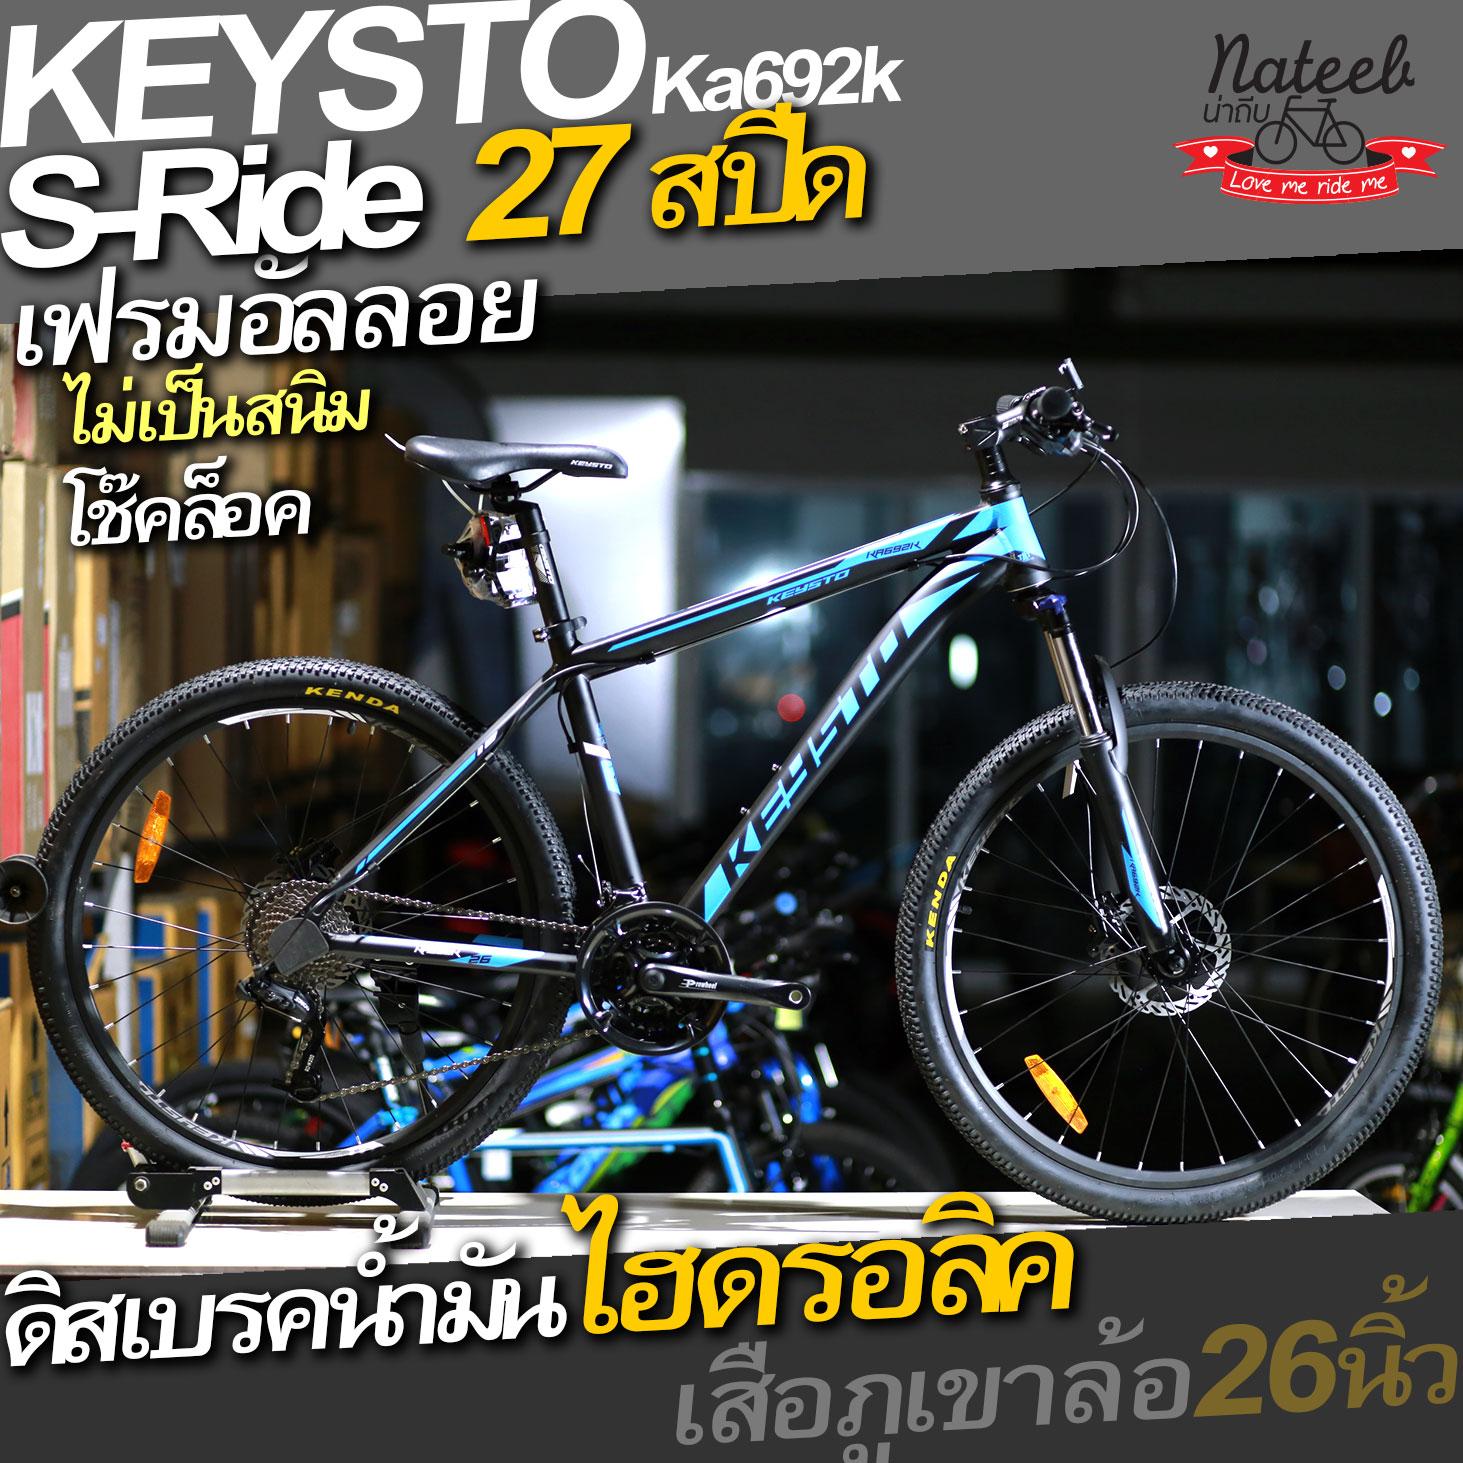 Keysto KA692k จักรยานเสือภูเขา เฟรมอลูมิเนียม 27สปีด ดิสเบรคน้ำมันไฮดรอลิคไซส์ 17